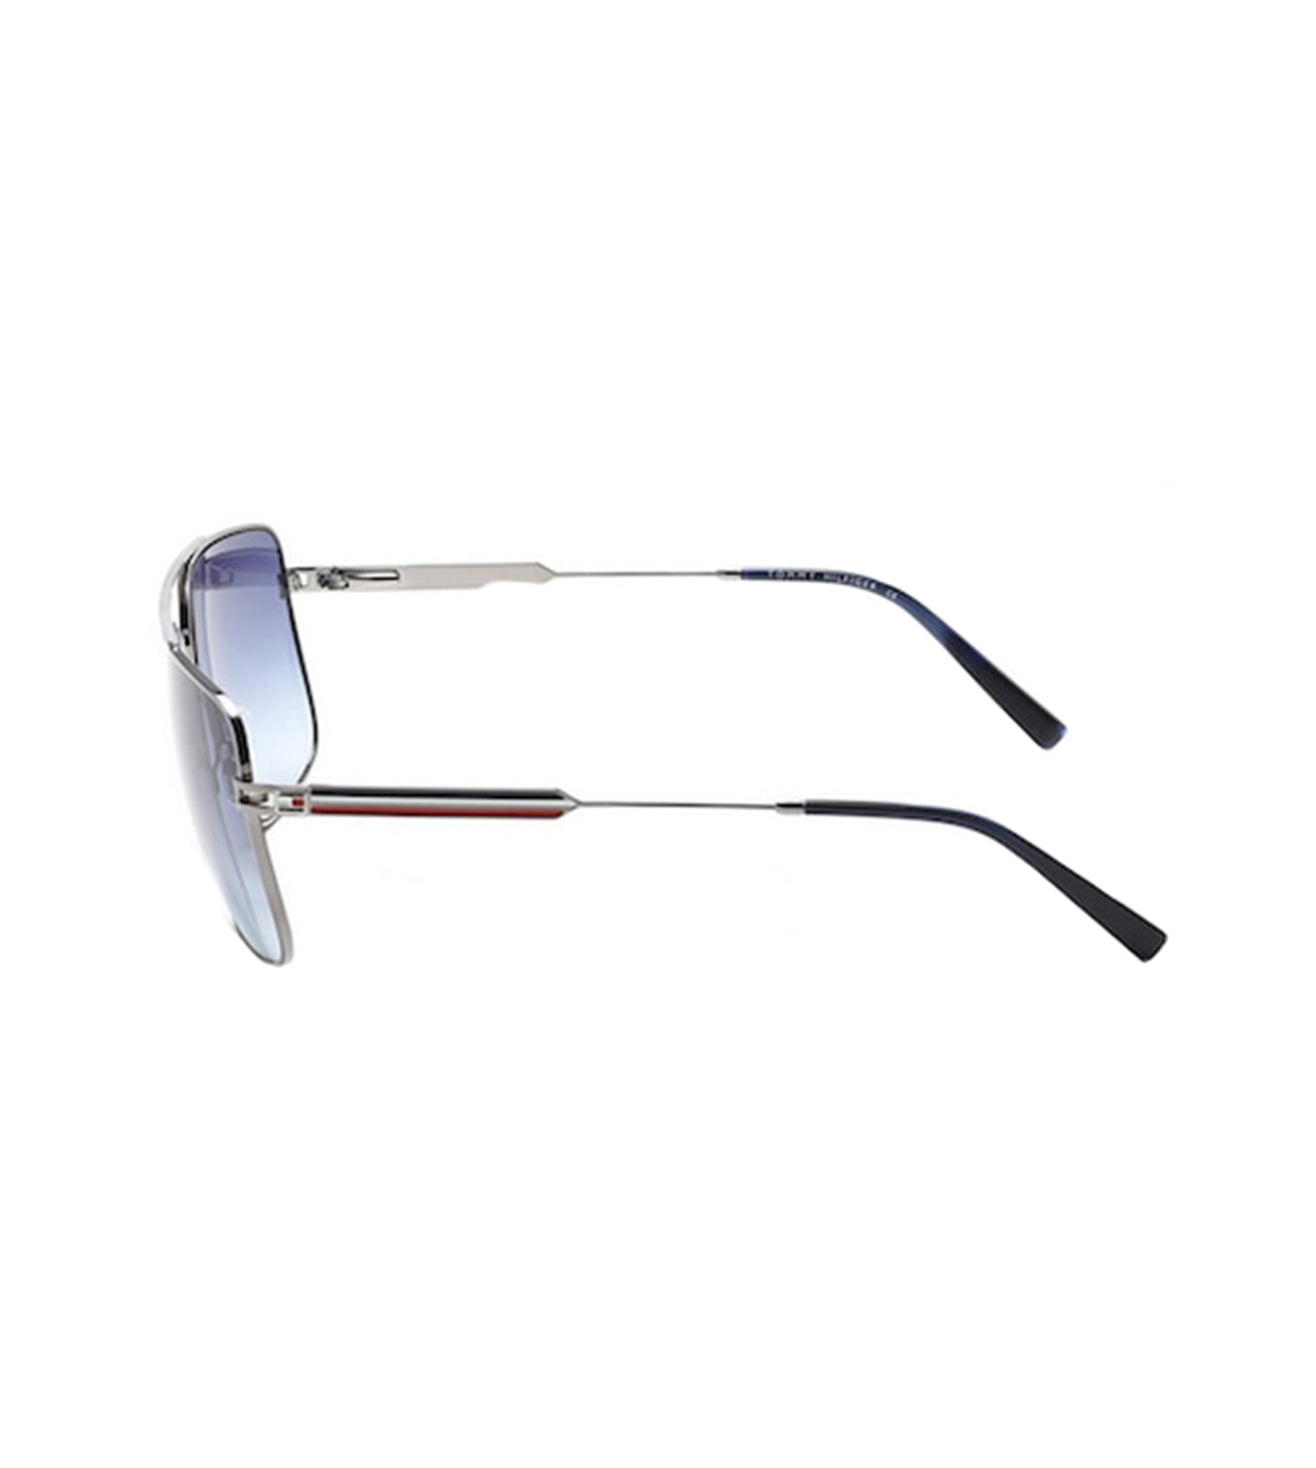 Tommy Hilfiger Men's Blue Gradient Square Sunglasses